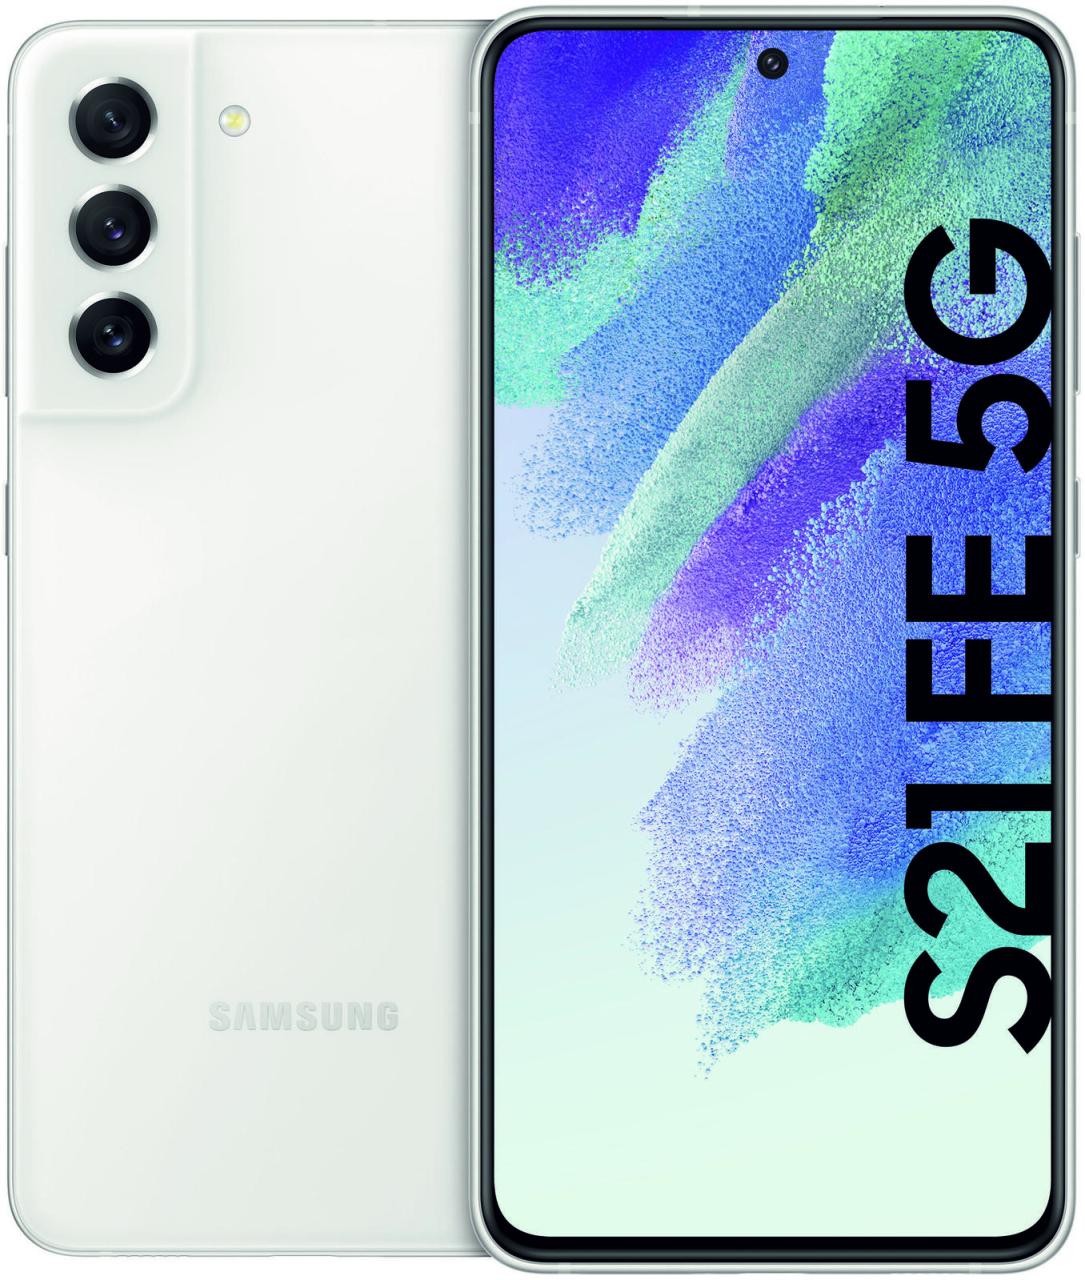 Samsung Smartphone Galaxy S21 FE 5G Dual-SIM 128GB weiß von Samsung